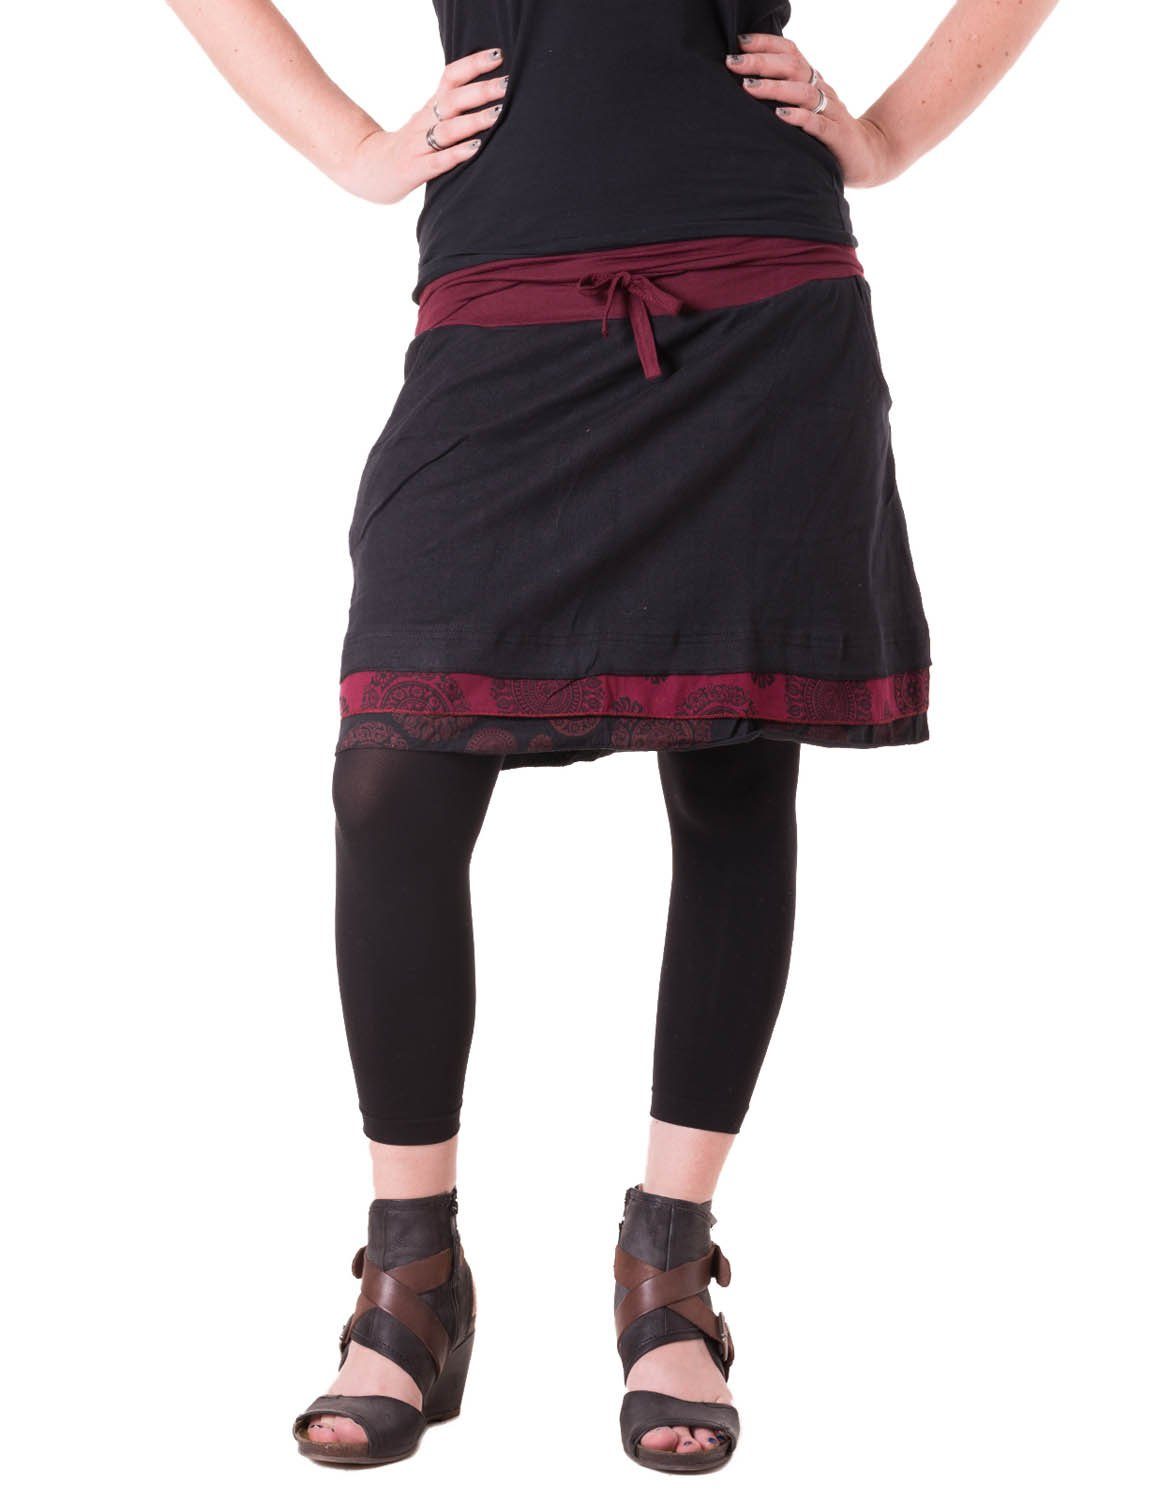 Style mit Binden Goa, Vishes schwarz-rot Bedruckt Lagenlook Cacheur, Hippie, Taschen zum Rock Minirock Boho